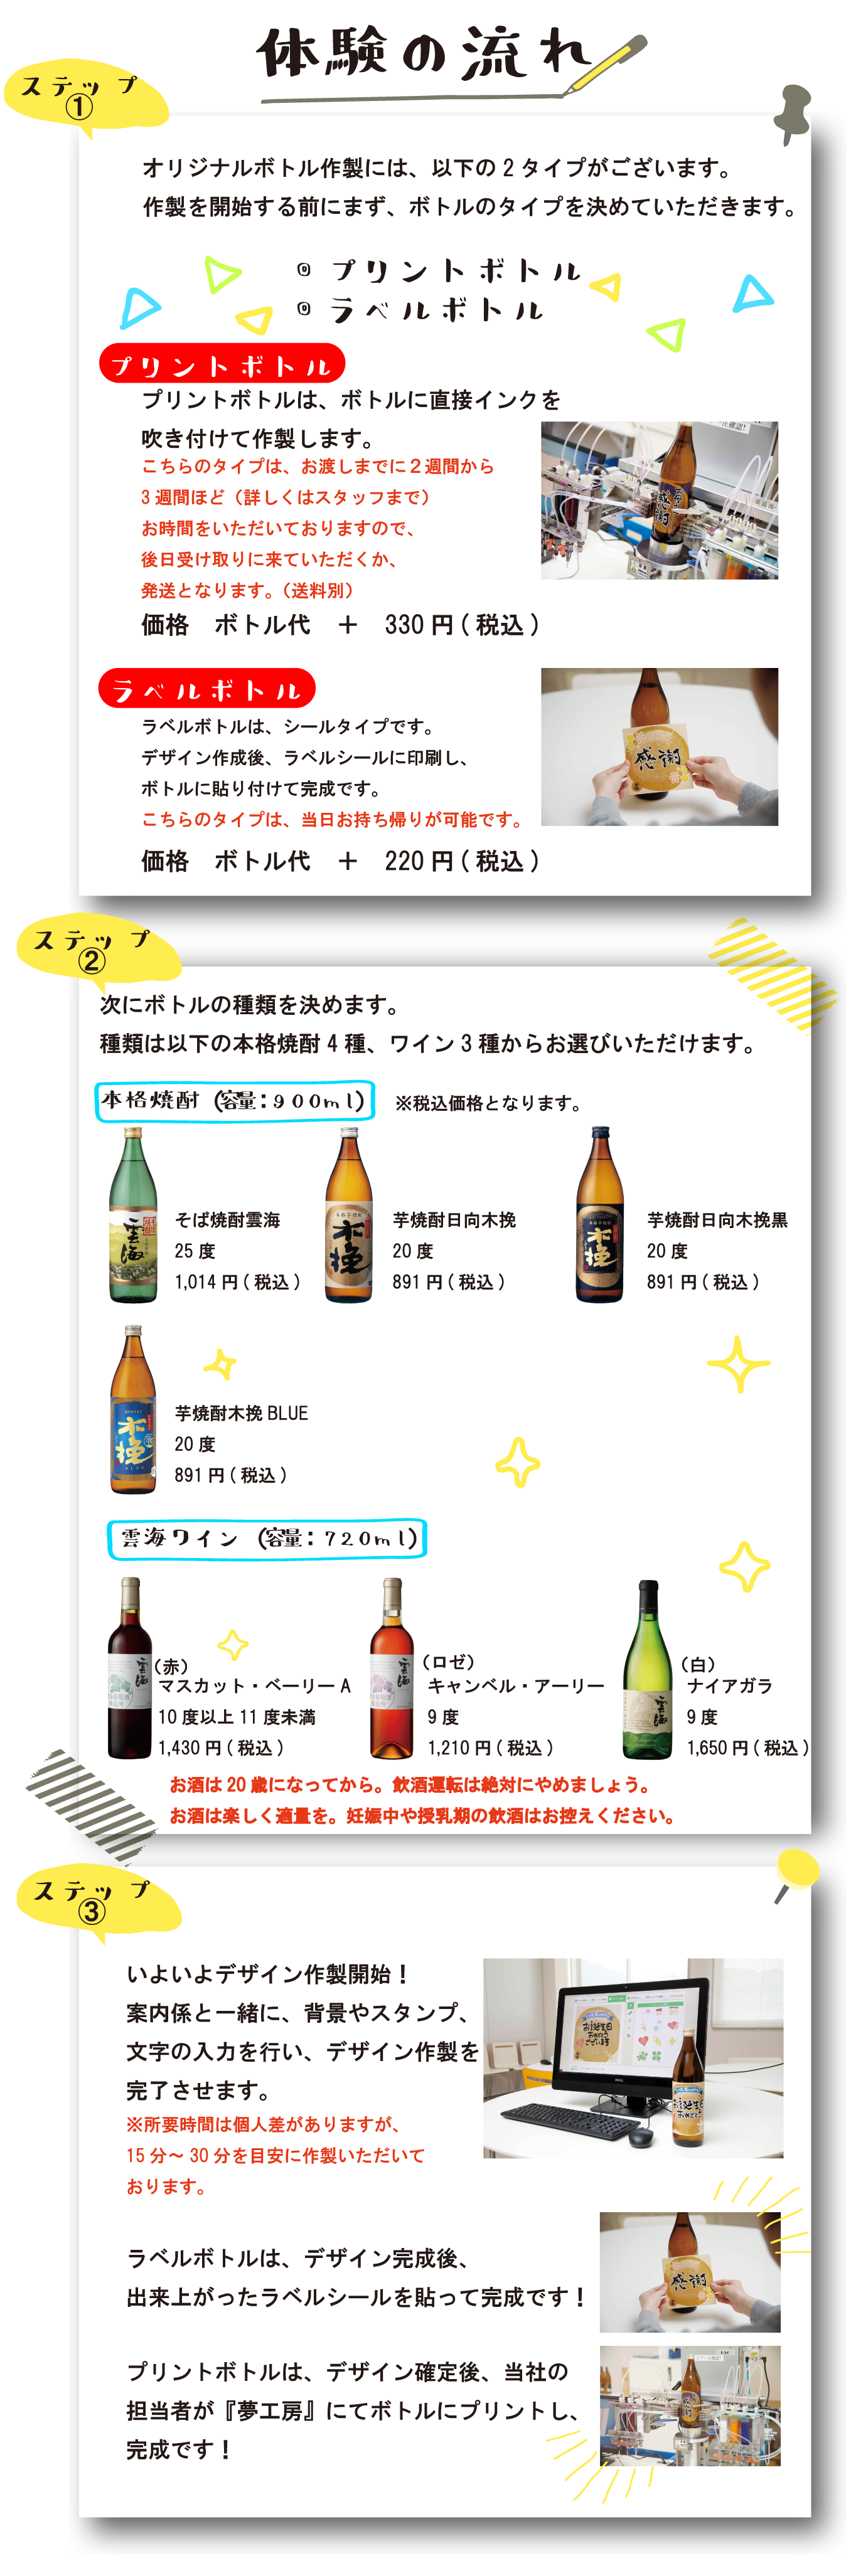 【WEB】オリジナルボトル作製